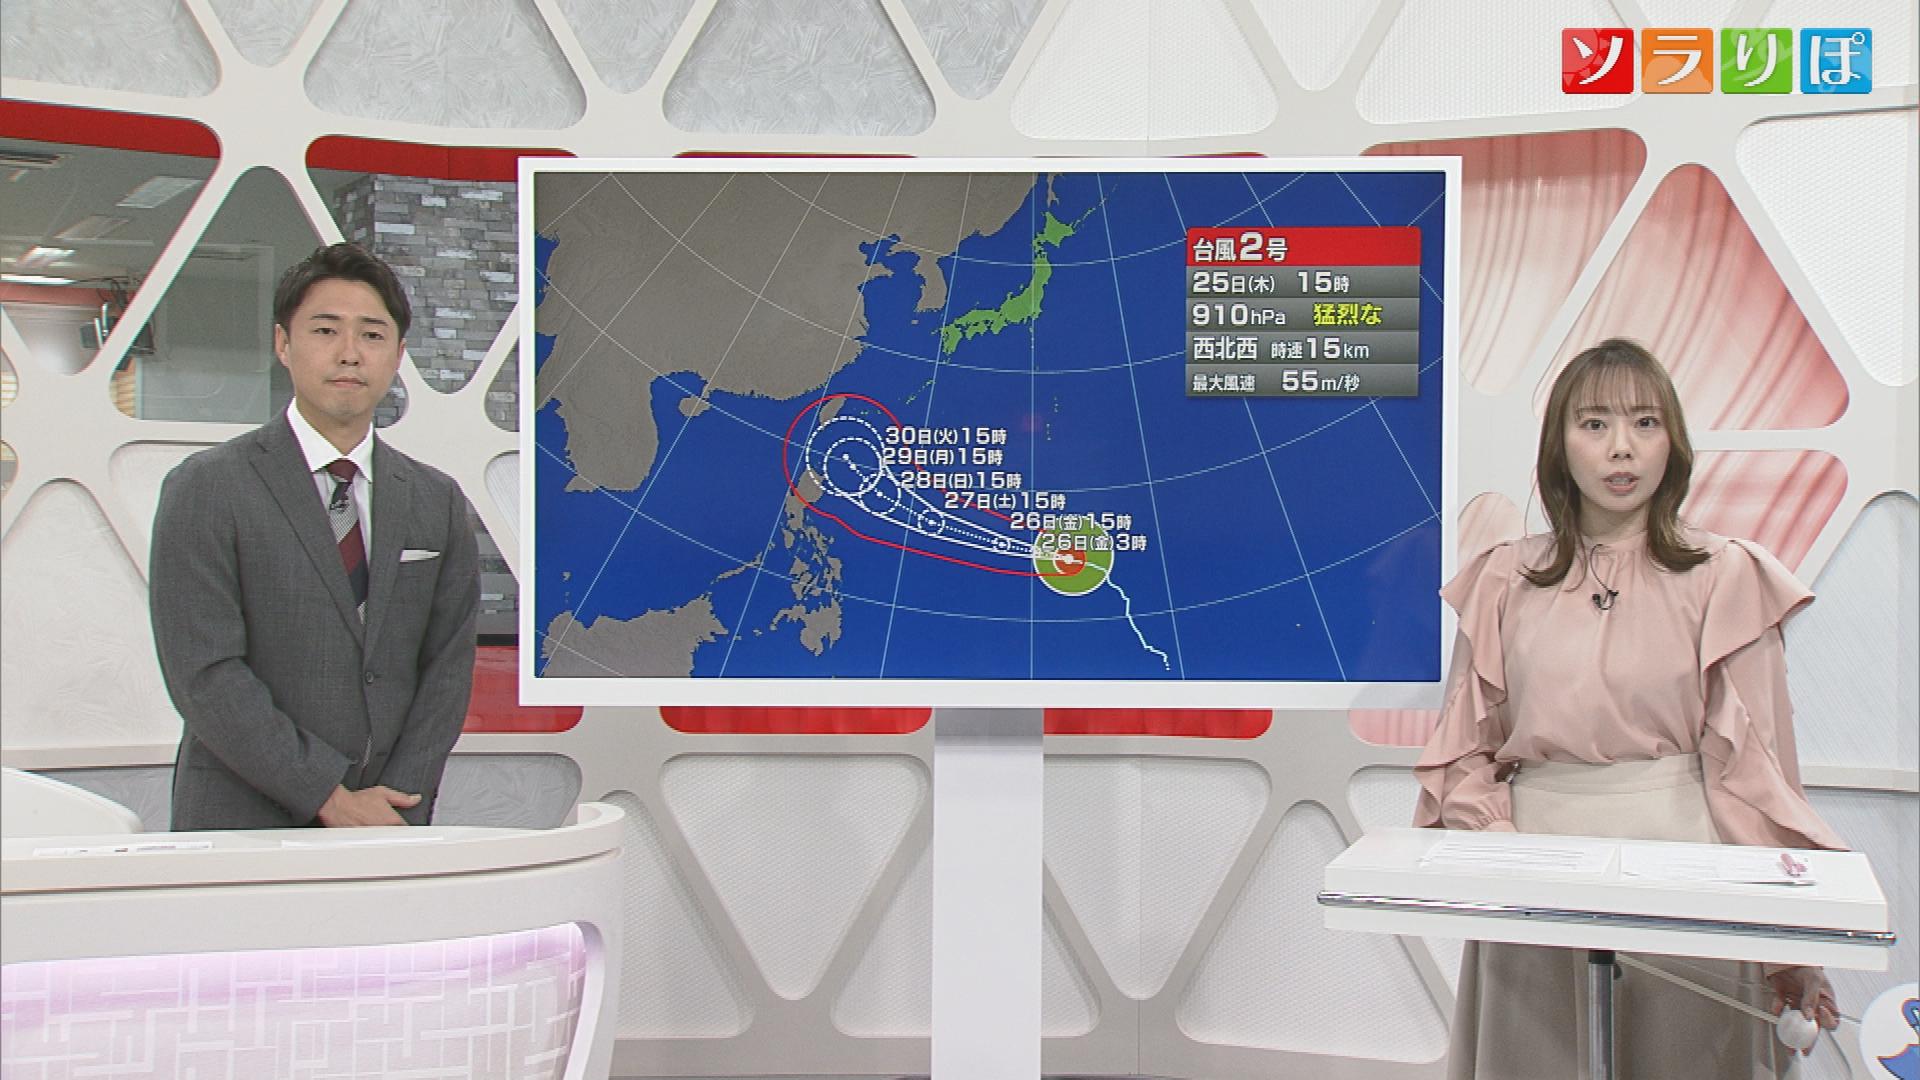 【気象予報士が解説】台風2号「猛烈な勢力」に発達 28日週は県内も影響に注意 大雨の恐れも【新潟】